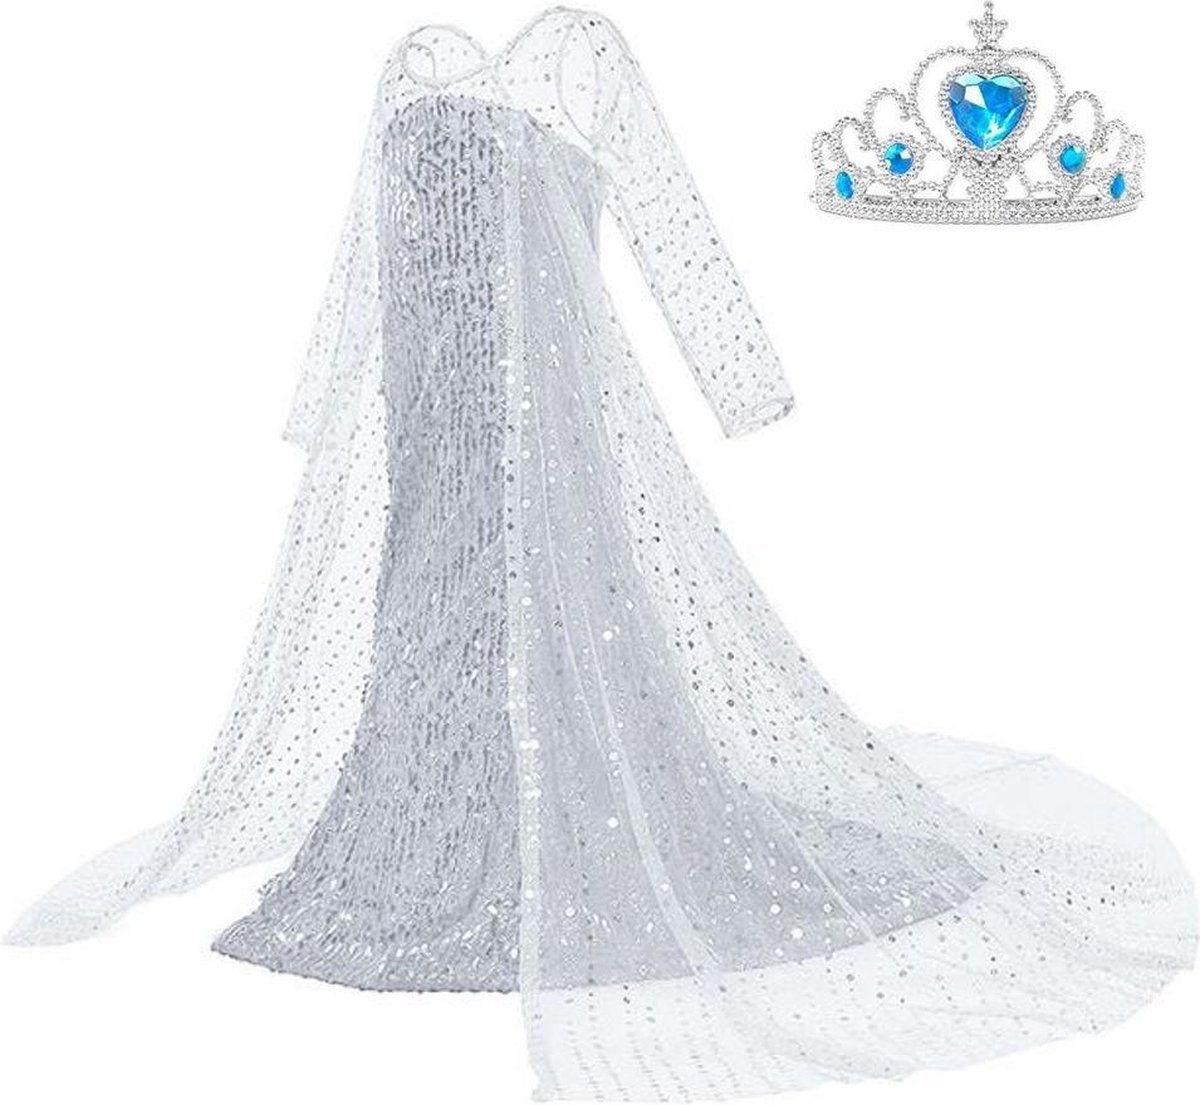 Frozen 2 Elsa jurk IJskoningin Deluxe met lange sleep 116-122 (130) + kroon Prinsessen jurk verkleedkleding